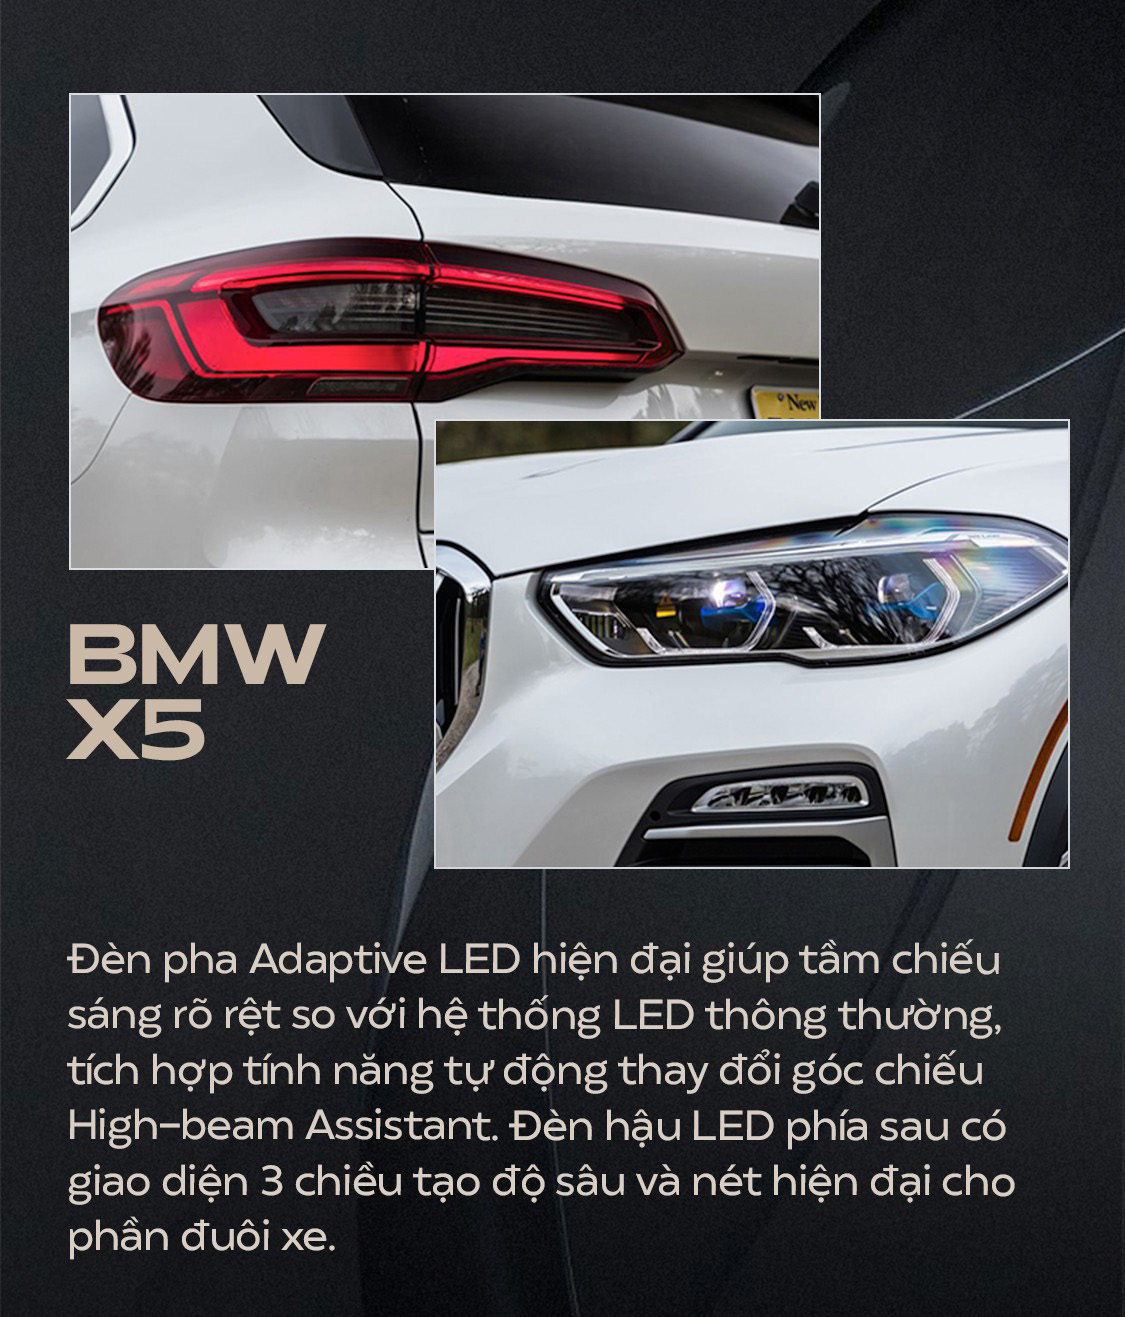 BMW X5 2019 tại Việt Nam được trang bị những gì? 3a